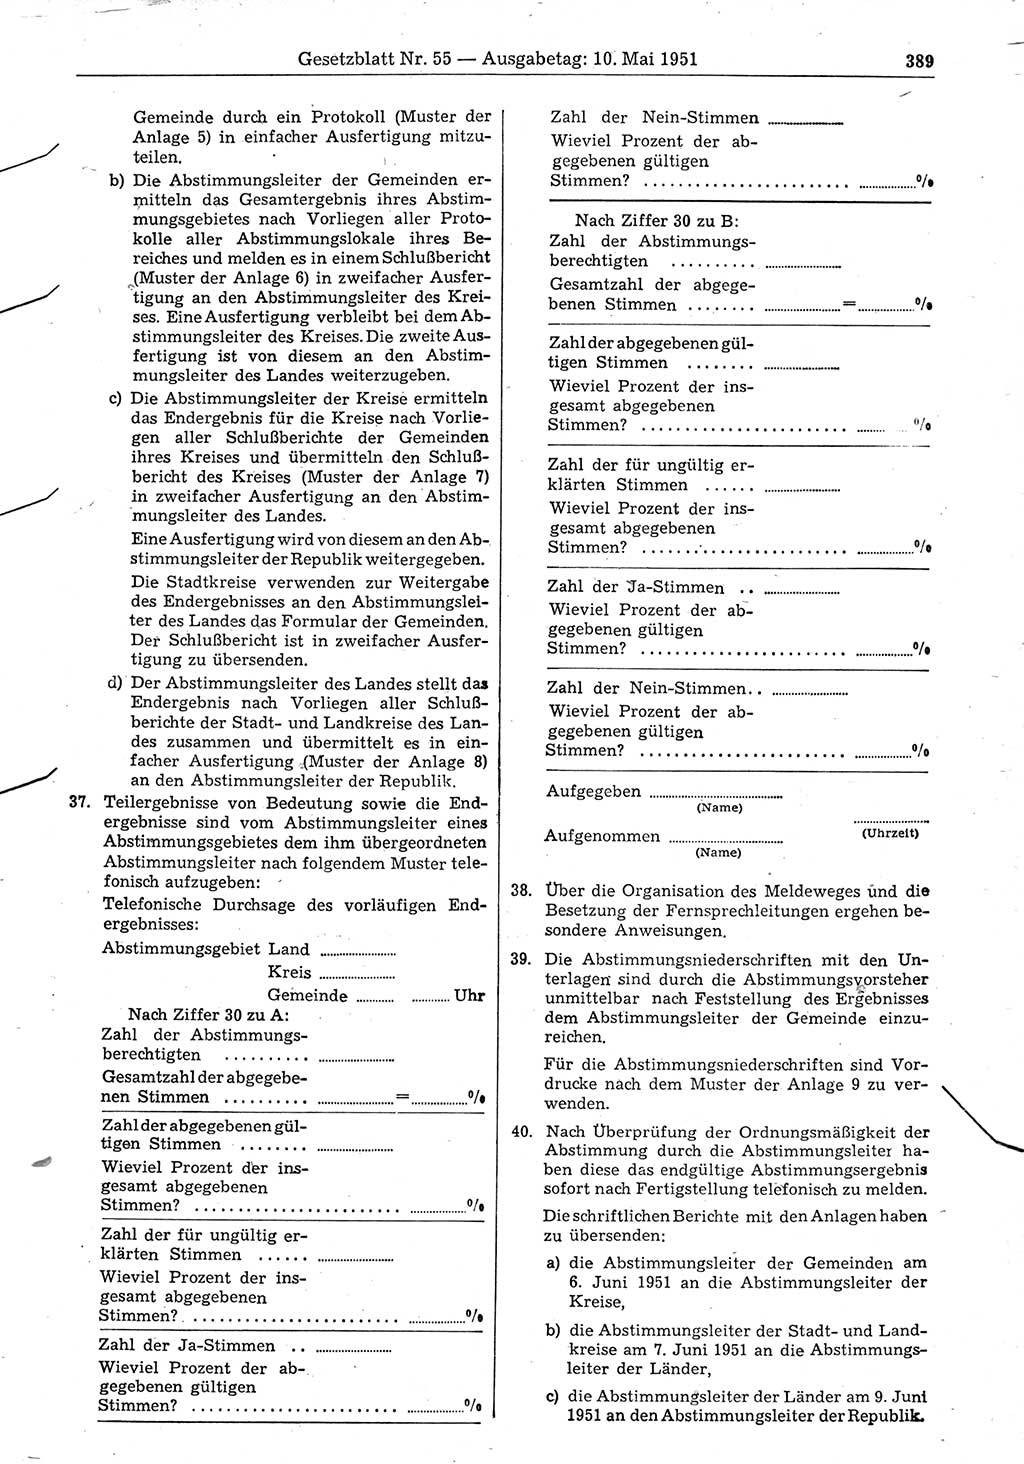 Gesetzblatt (GBl.) der Deutschen Demokratischen Republik (DDR) 1951, Seite 389 (GBl. DDR 1951, S. 389)